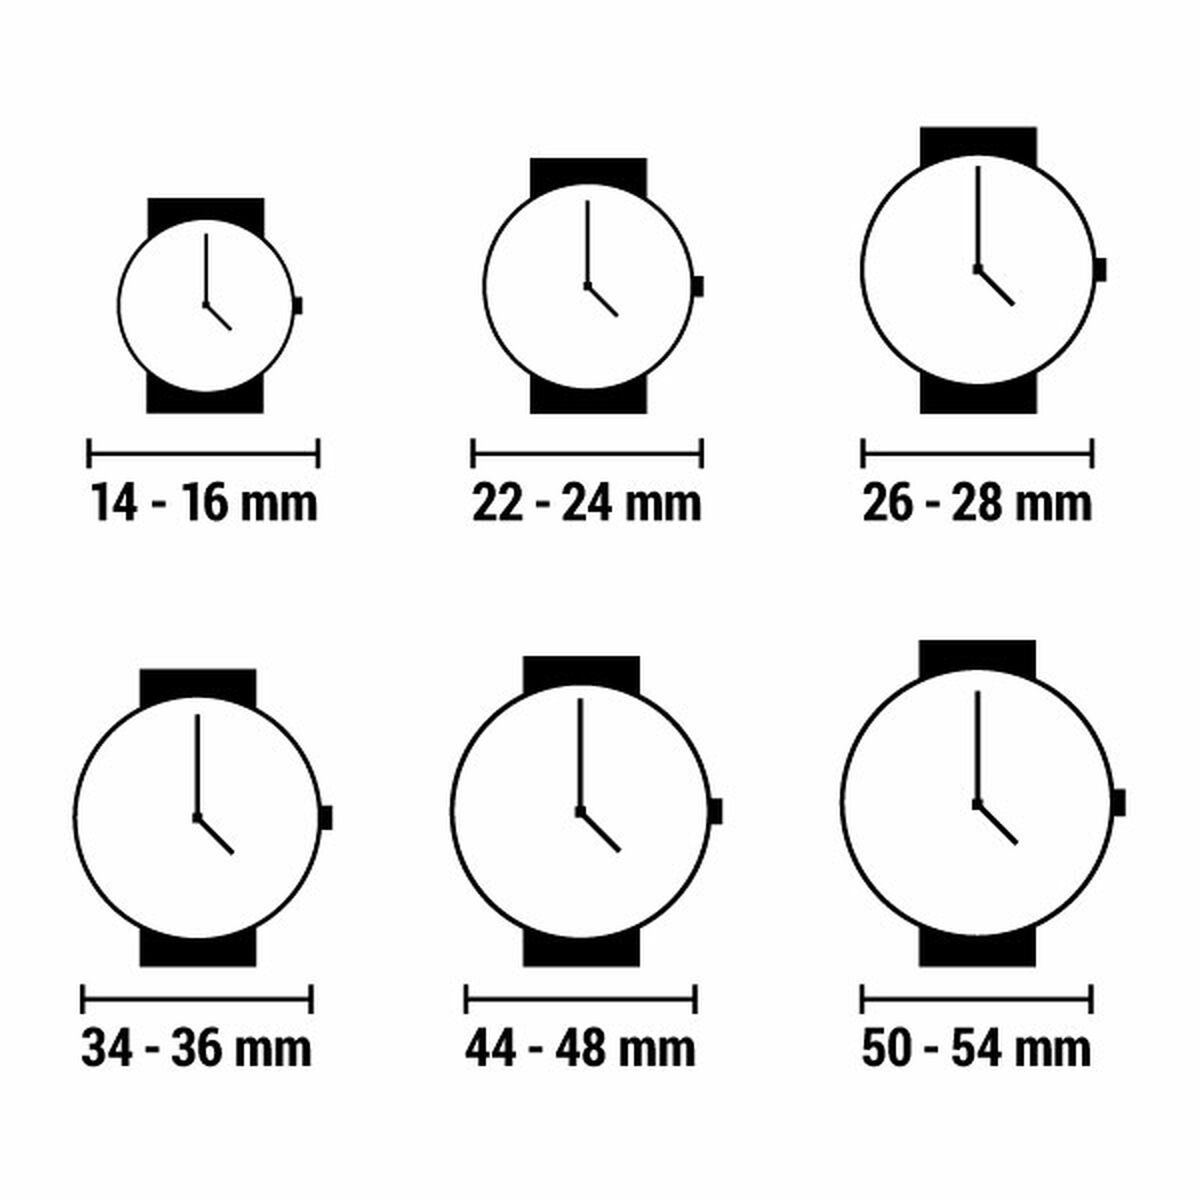 Horloge Dames Calypso K5170_8